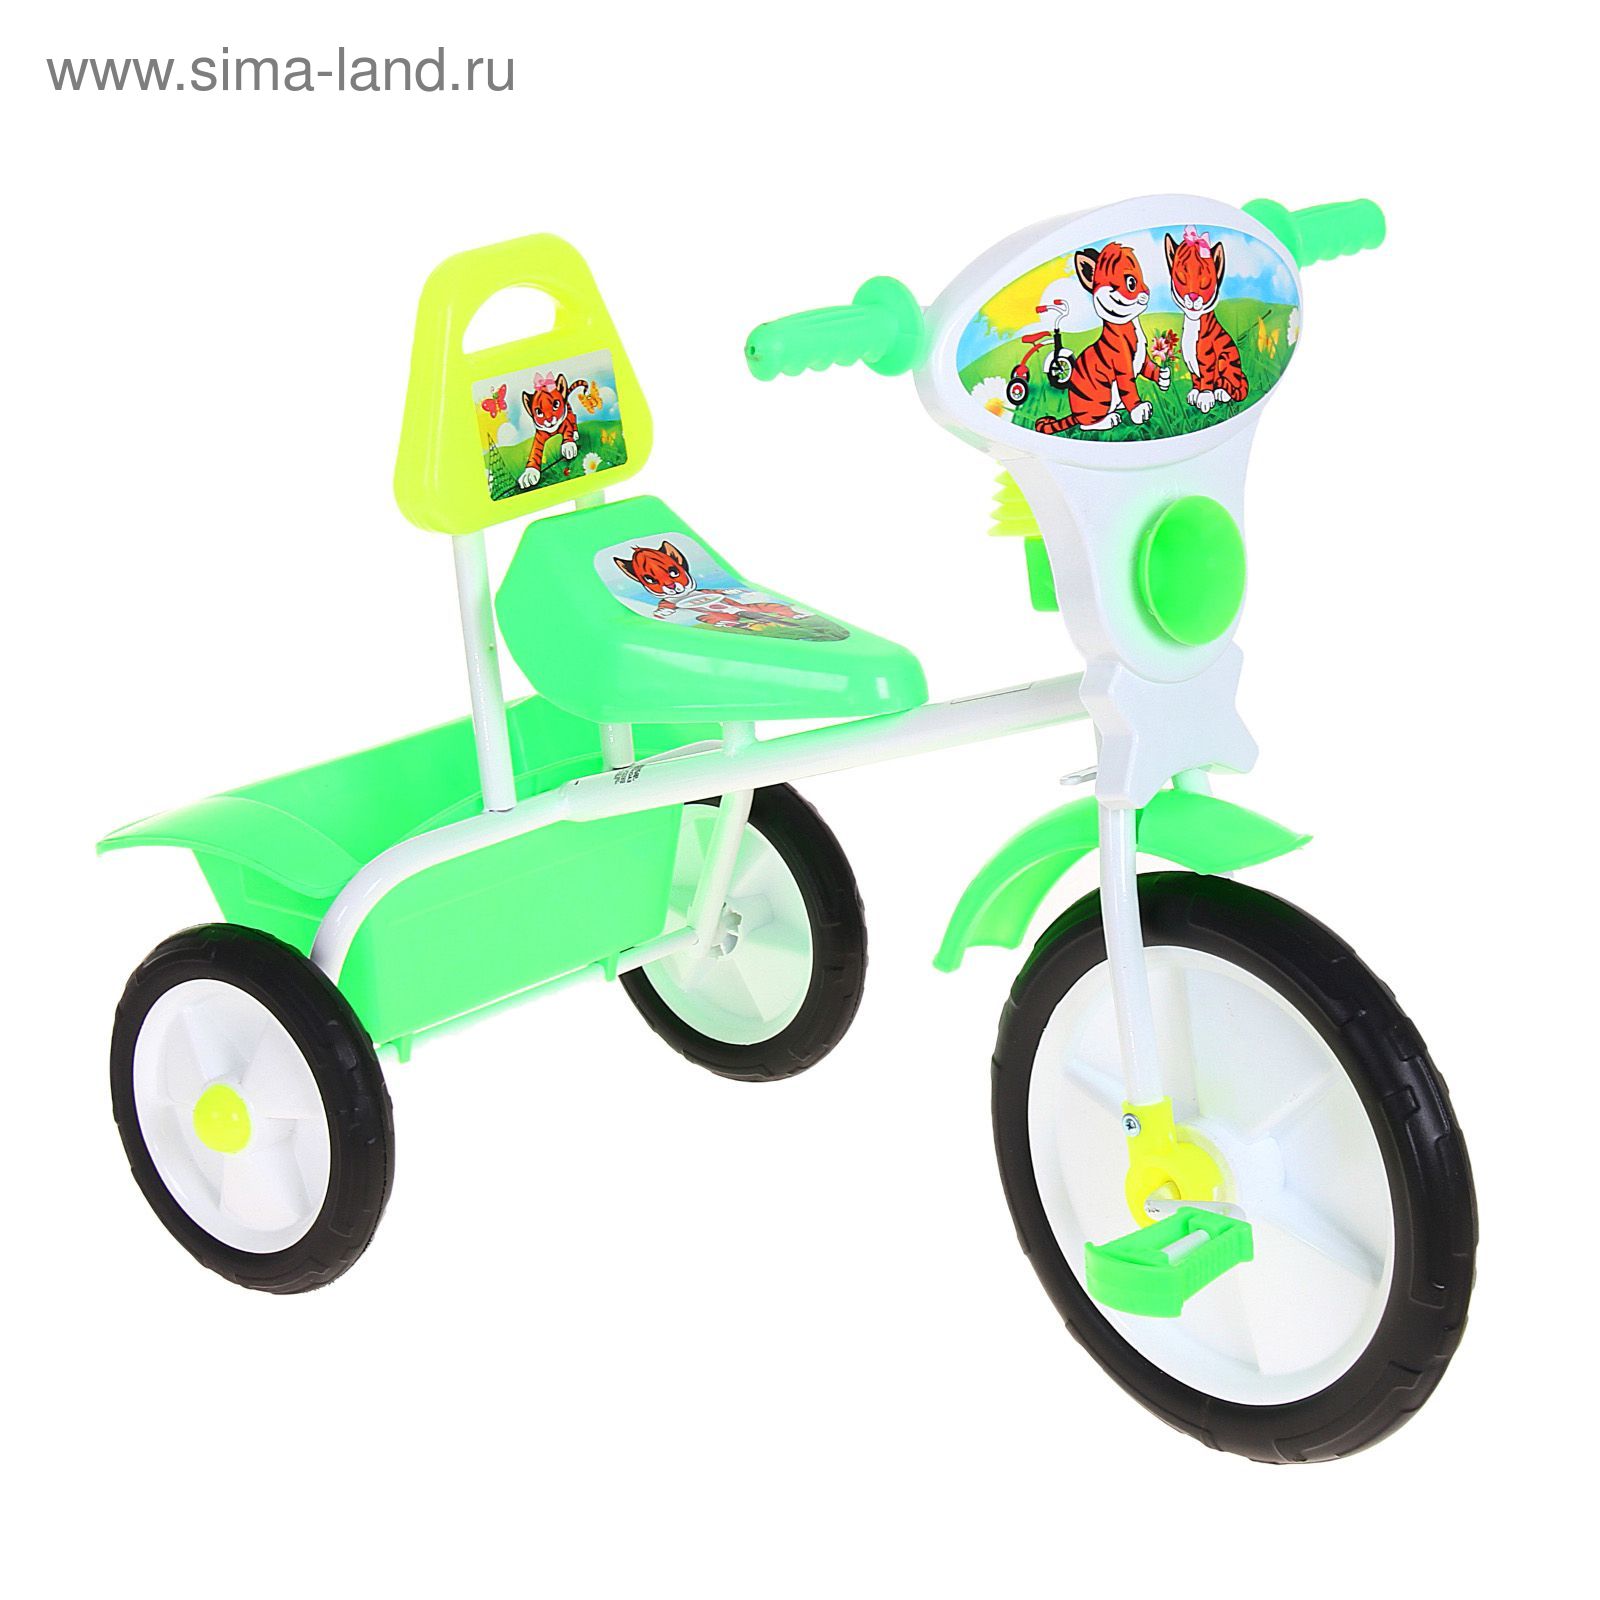 Велосипед трехколесный  "Малыш"  06П, цвет зеленый, фасовка: 2шт.